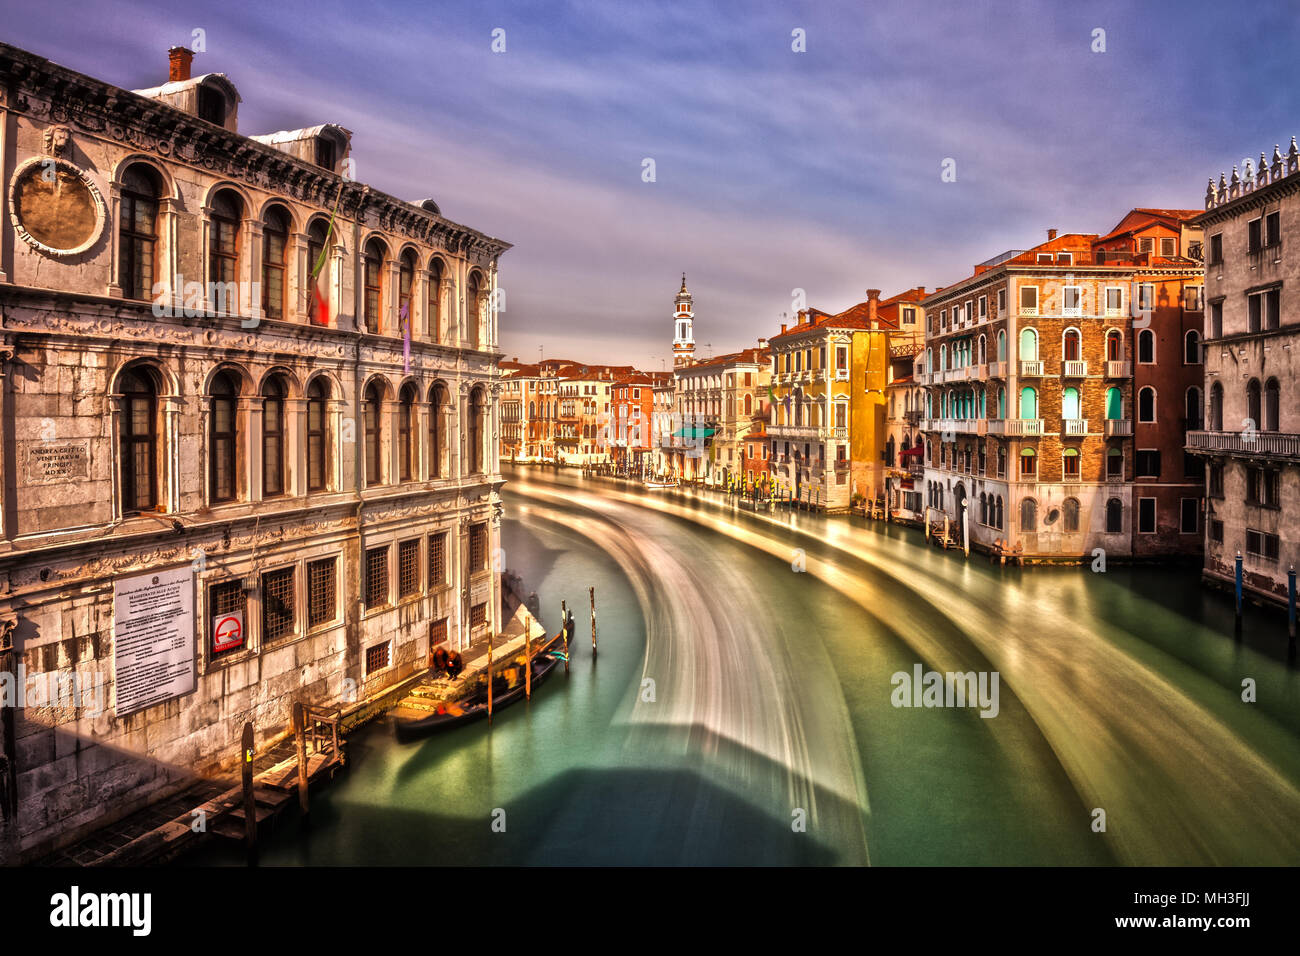 Die Grand Canal und venezianische Architektur, Venedig, Italien Stockfoto